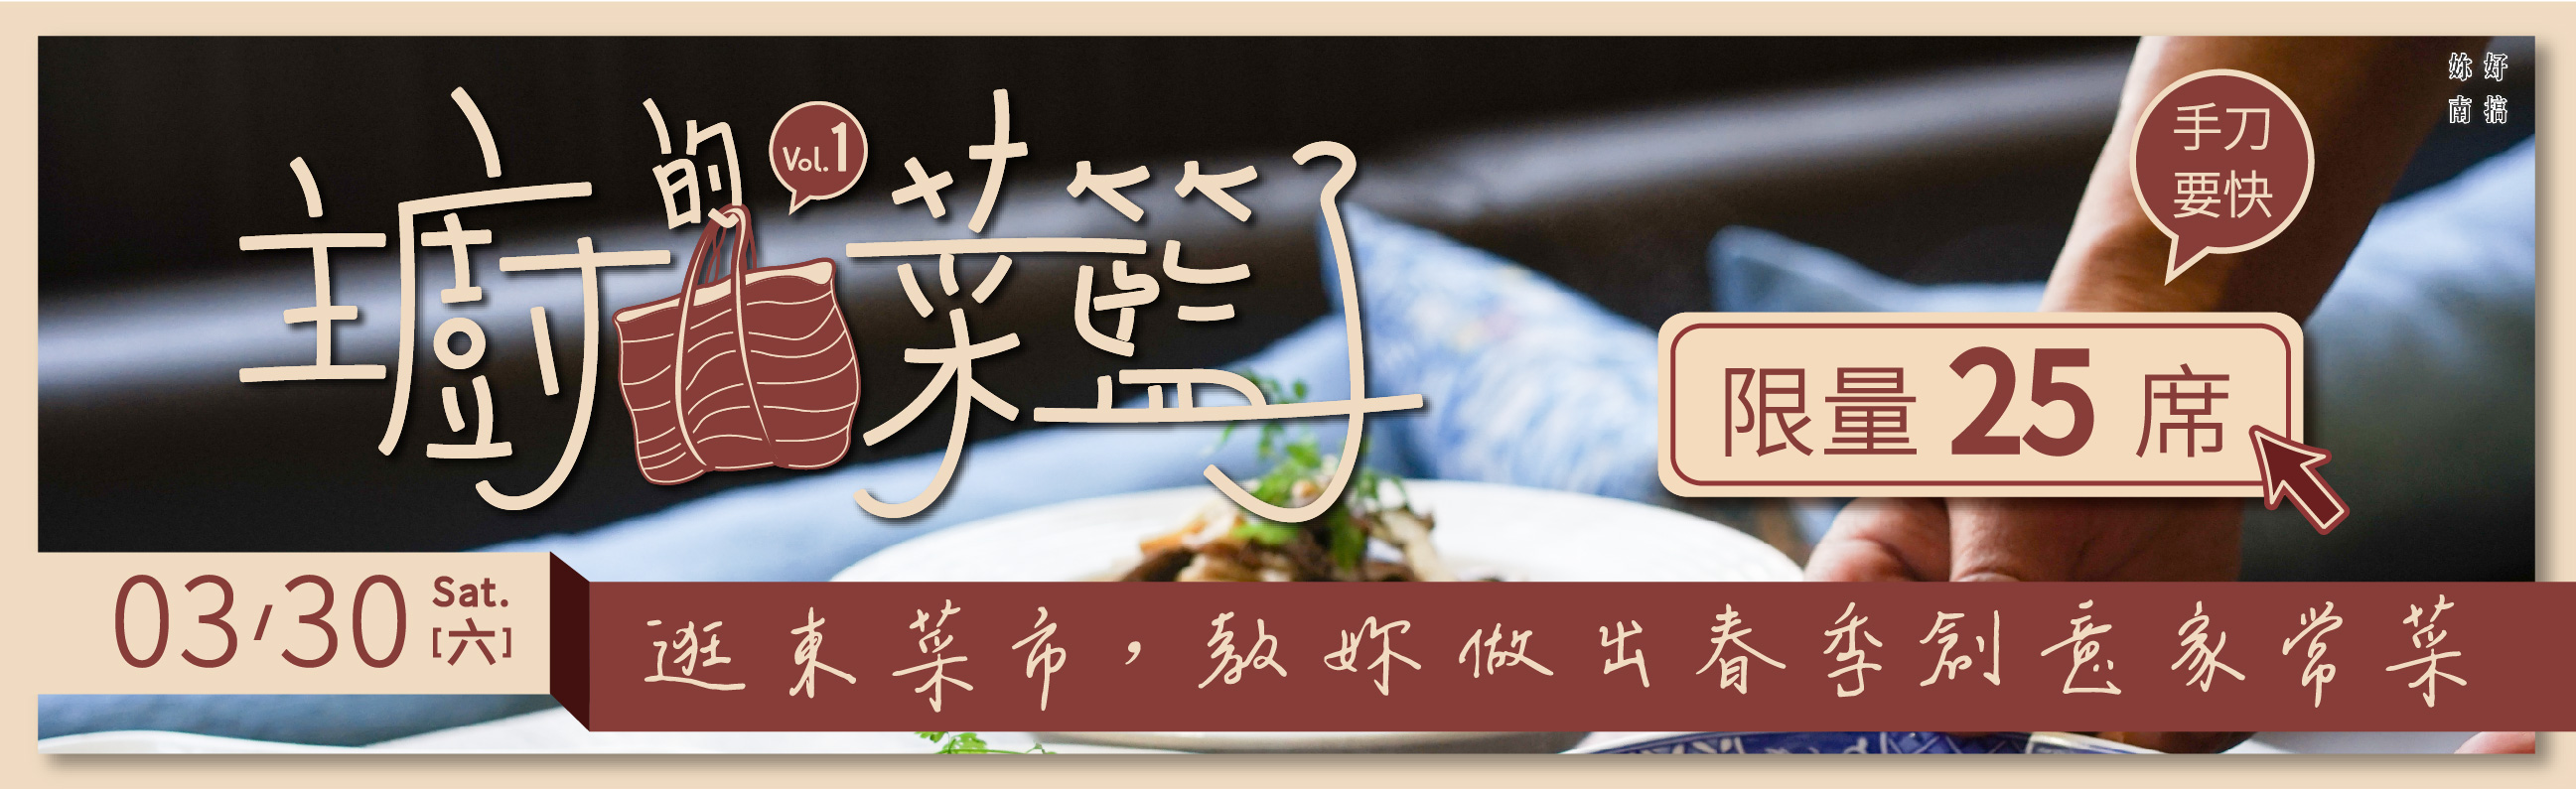 台南旅遊-主廚的菜籃子-3月份活動報名-妳好南搞